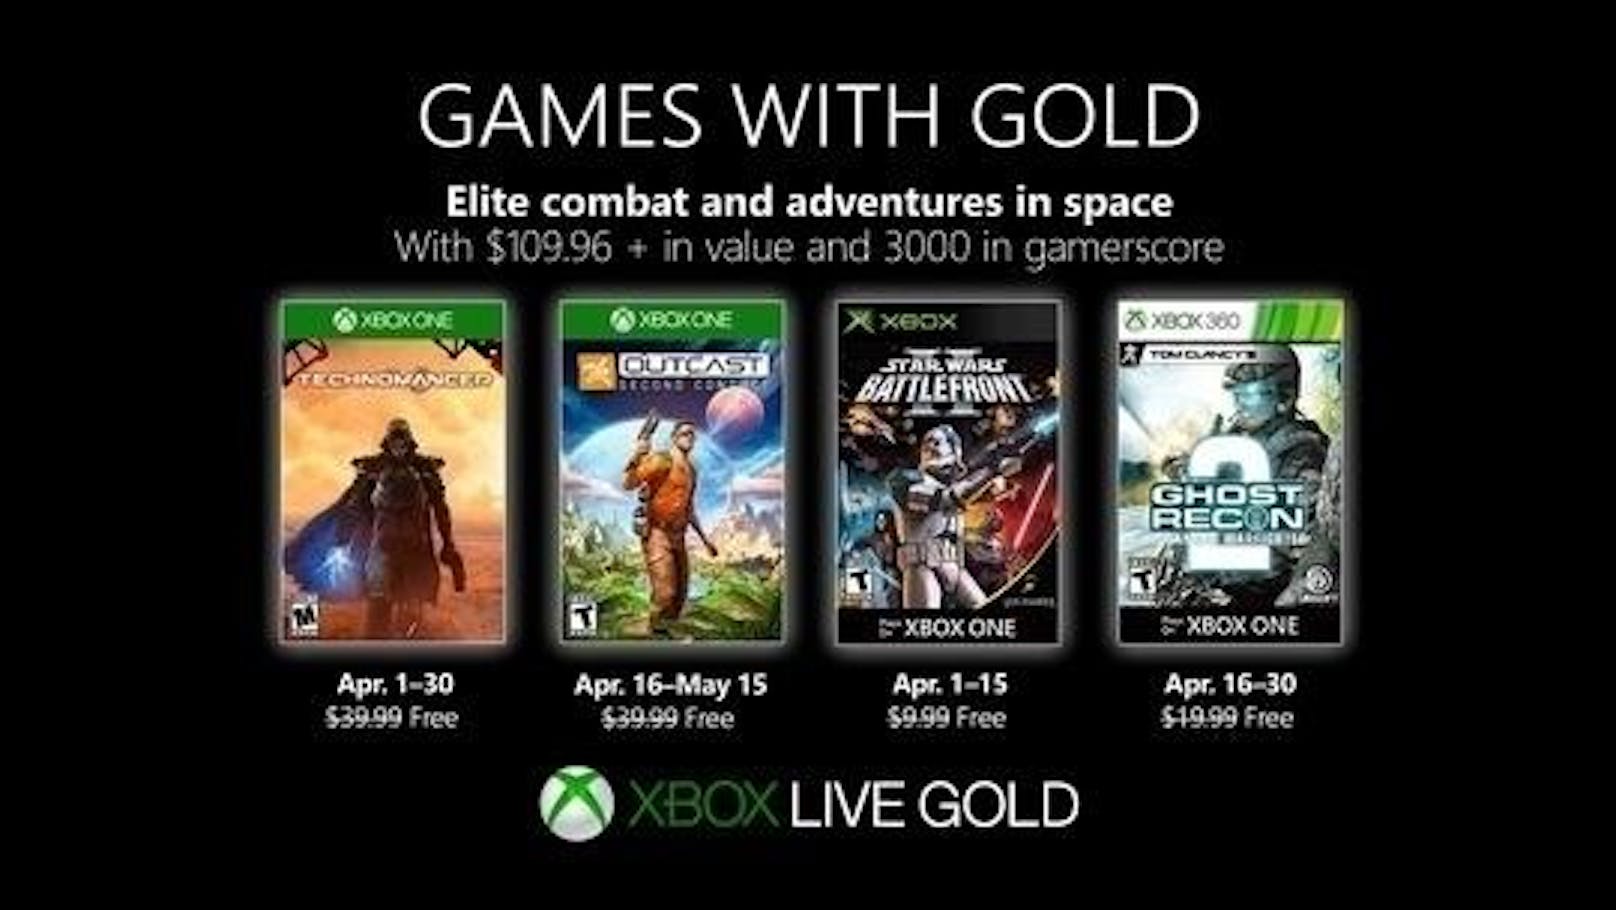 <b>26. März 2019:</b> Im April warten im Rahmen der Games with Gold wieder tolle kostenlose Spiele auf Xbox-Zocker. The Technomancer ist vom 1. bis 30. April auf Xbox One verfügbar, Outcast: Second Contact vom 16. April bis 15. Mai ebenfalls auf Xbox One, Star Wars Republic Commando gibt es vom 1. bis 15. April auf Xbox One und Xbox 360 und Tom Clancys Ghost Recon: Advanced Warfighter 2 vom 16. bis 30. April auf Xbox One und Xbox 360.